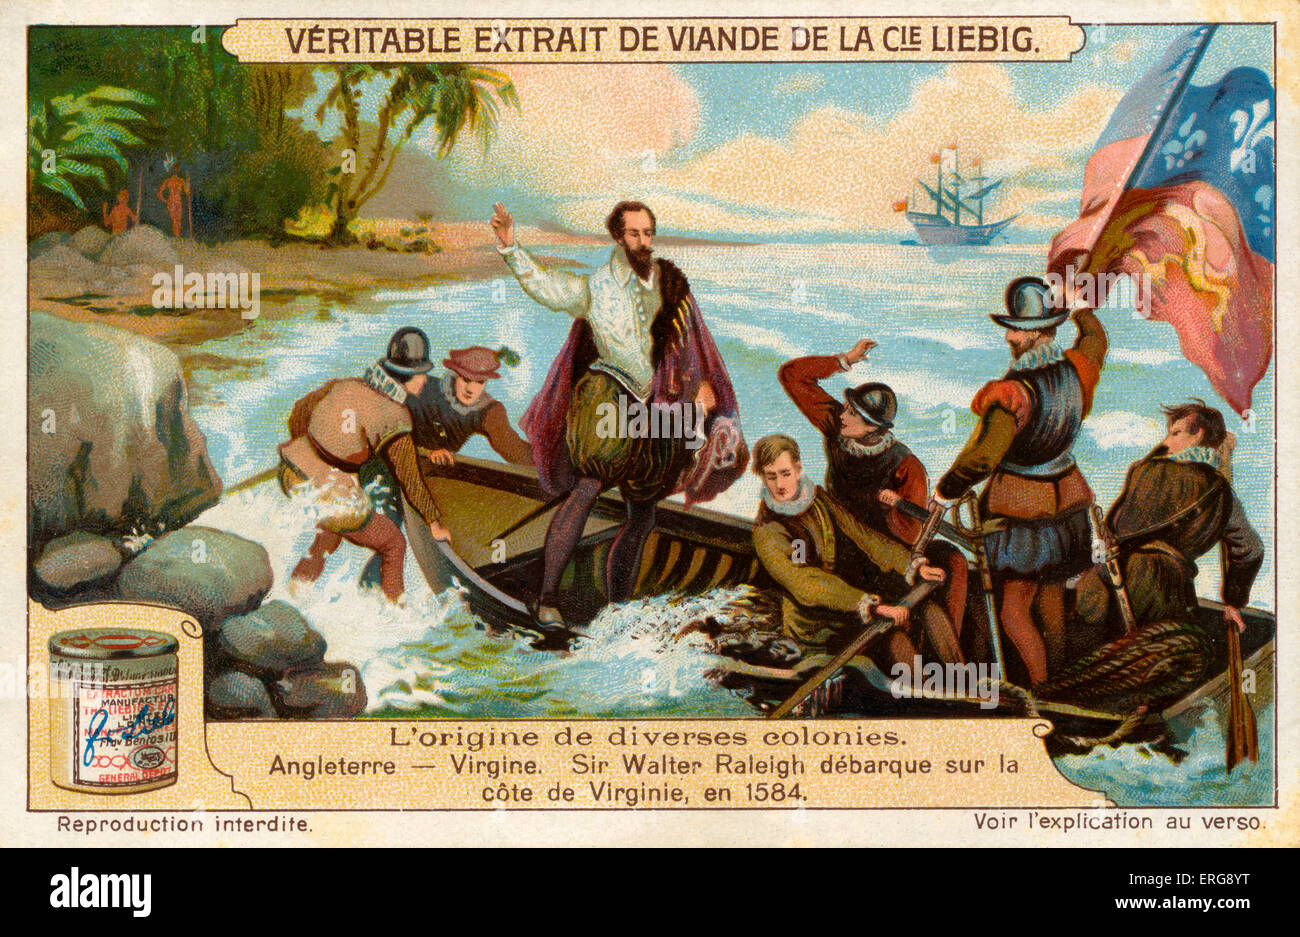 Fondation de la colonie de Virginie par les Anglais : Sir Walter Raleigh (ca 1552 - 1618) l'atterrissage sur la côte de la Virginie en 1584. (Liebig série : L'origine de diverses colonies/l'origine des diverses colonies, 1922, No 4). Banque D'Images